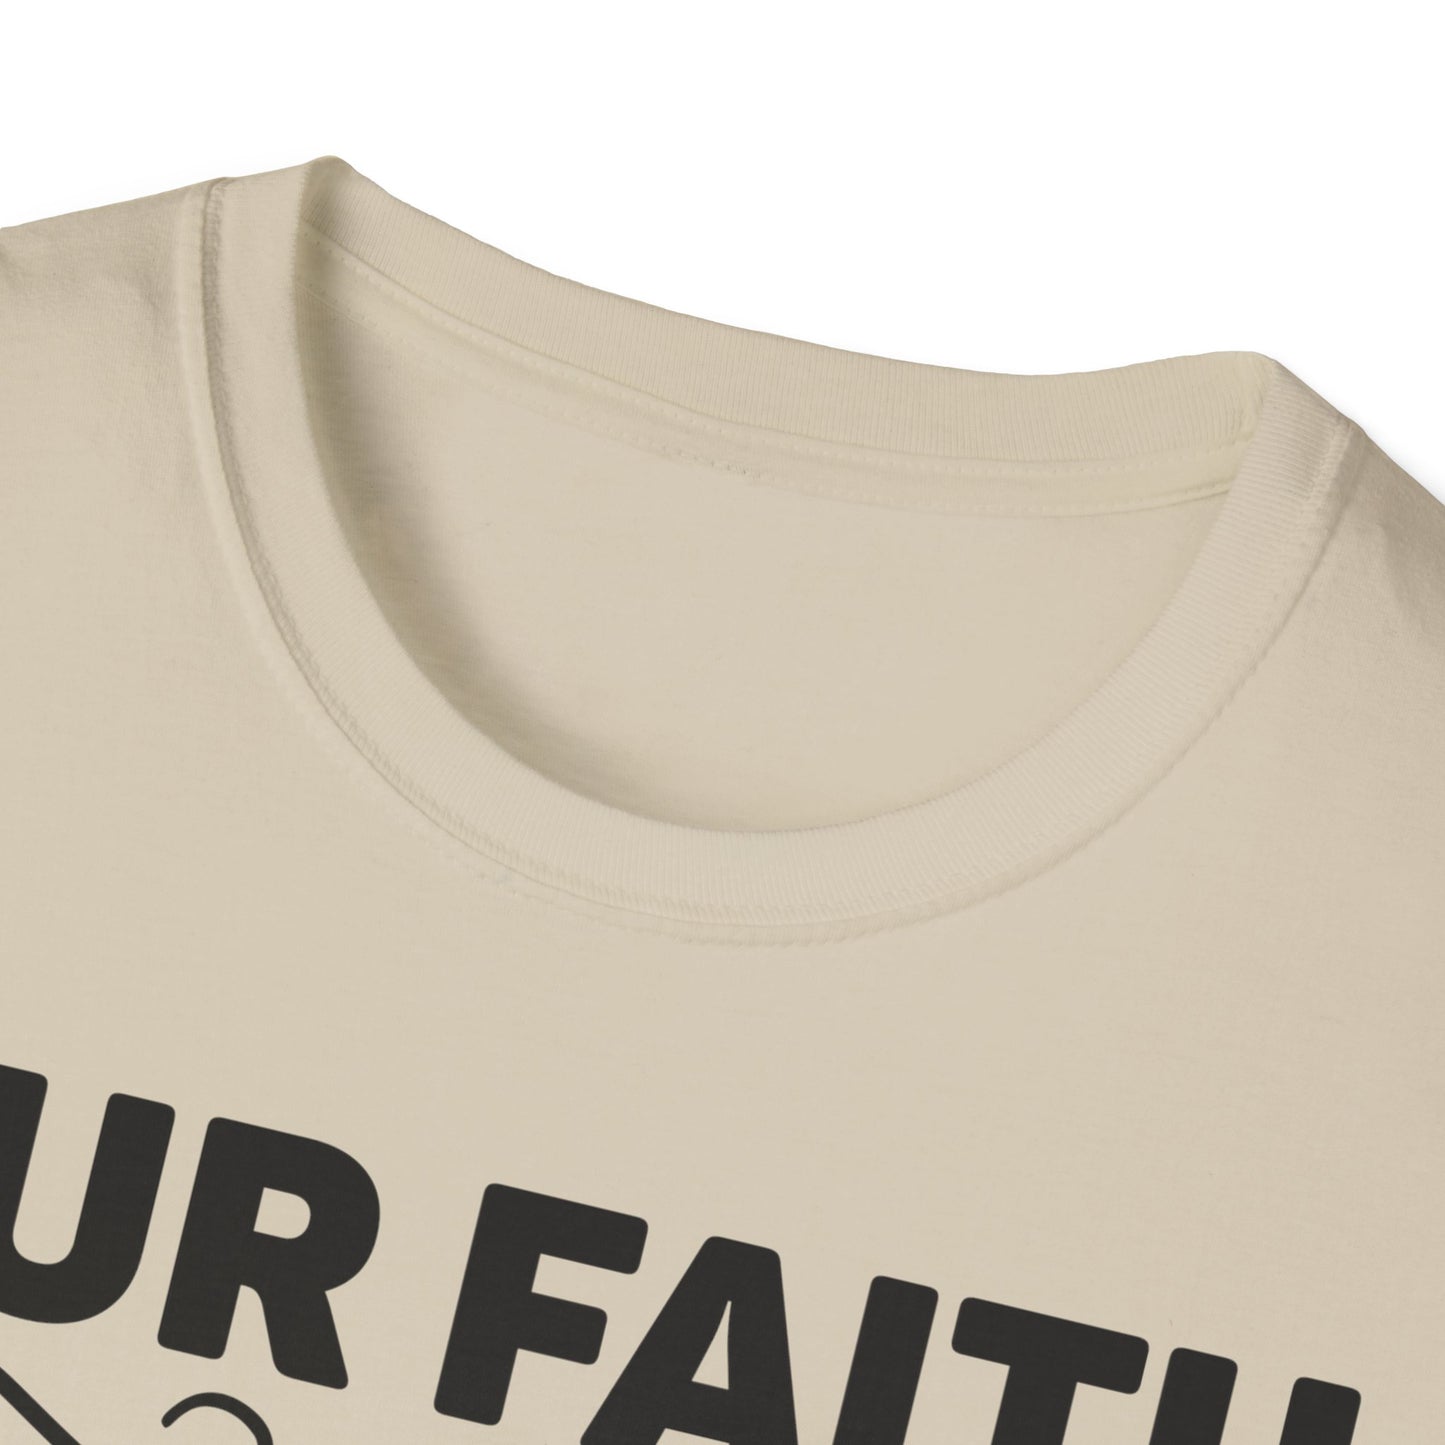 Our Faith Can Move Mountains Matthew 17:20 Triple Viking T-Shirt